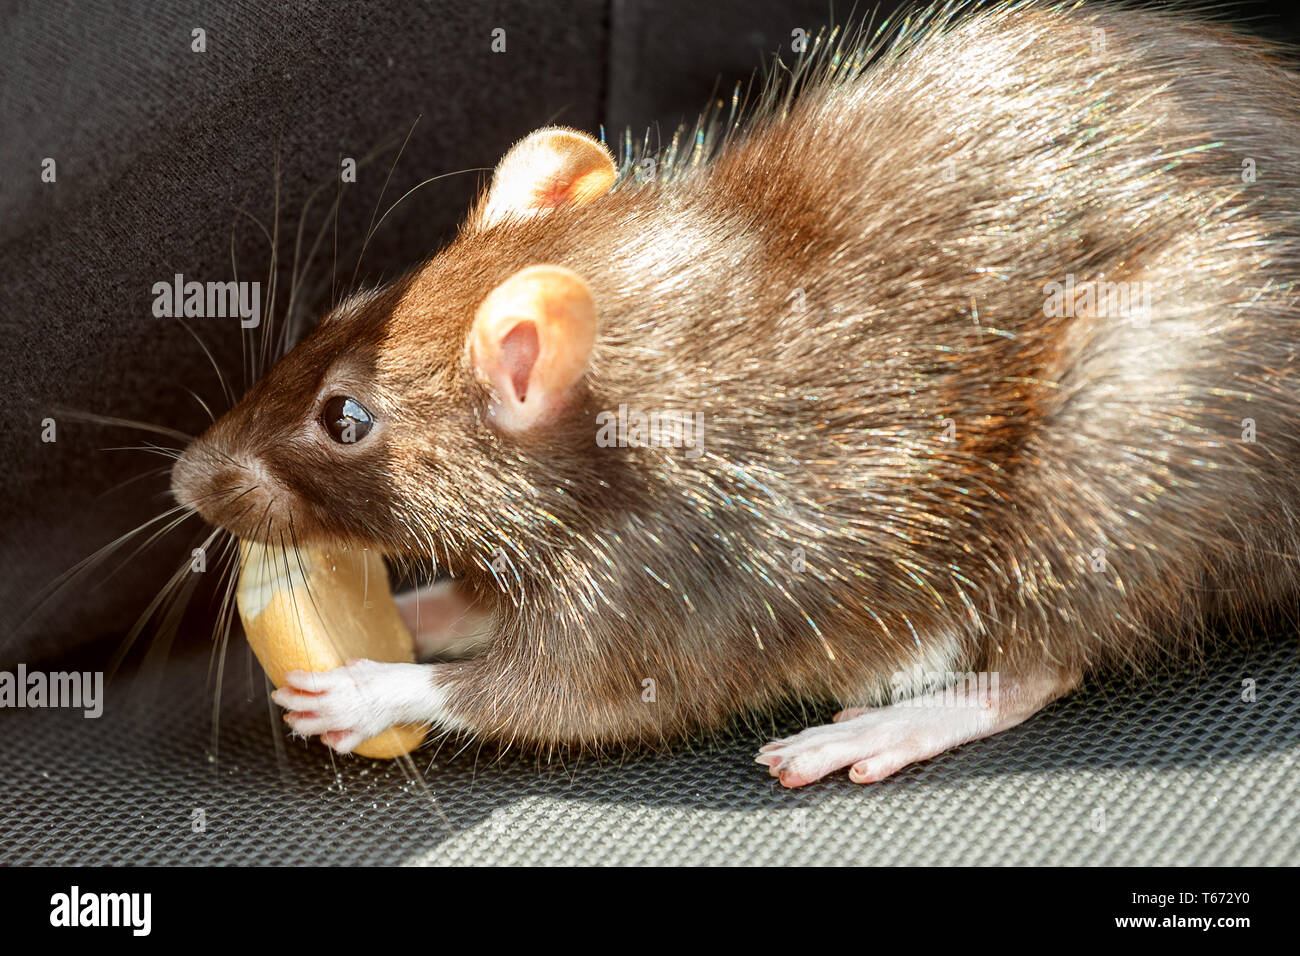 rat eating cake Stock Photo